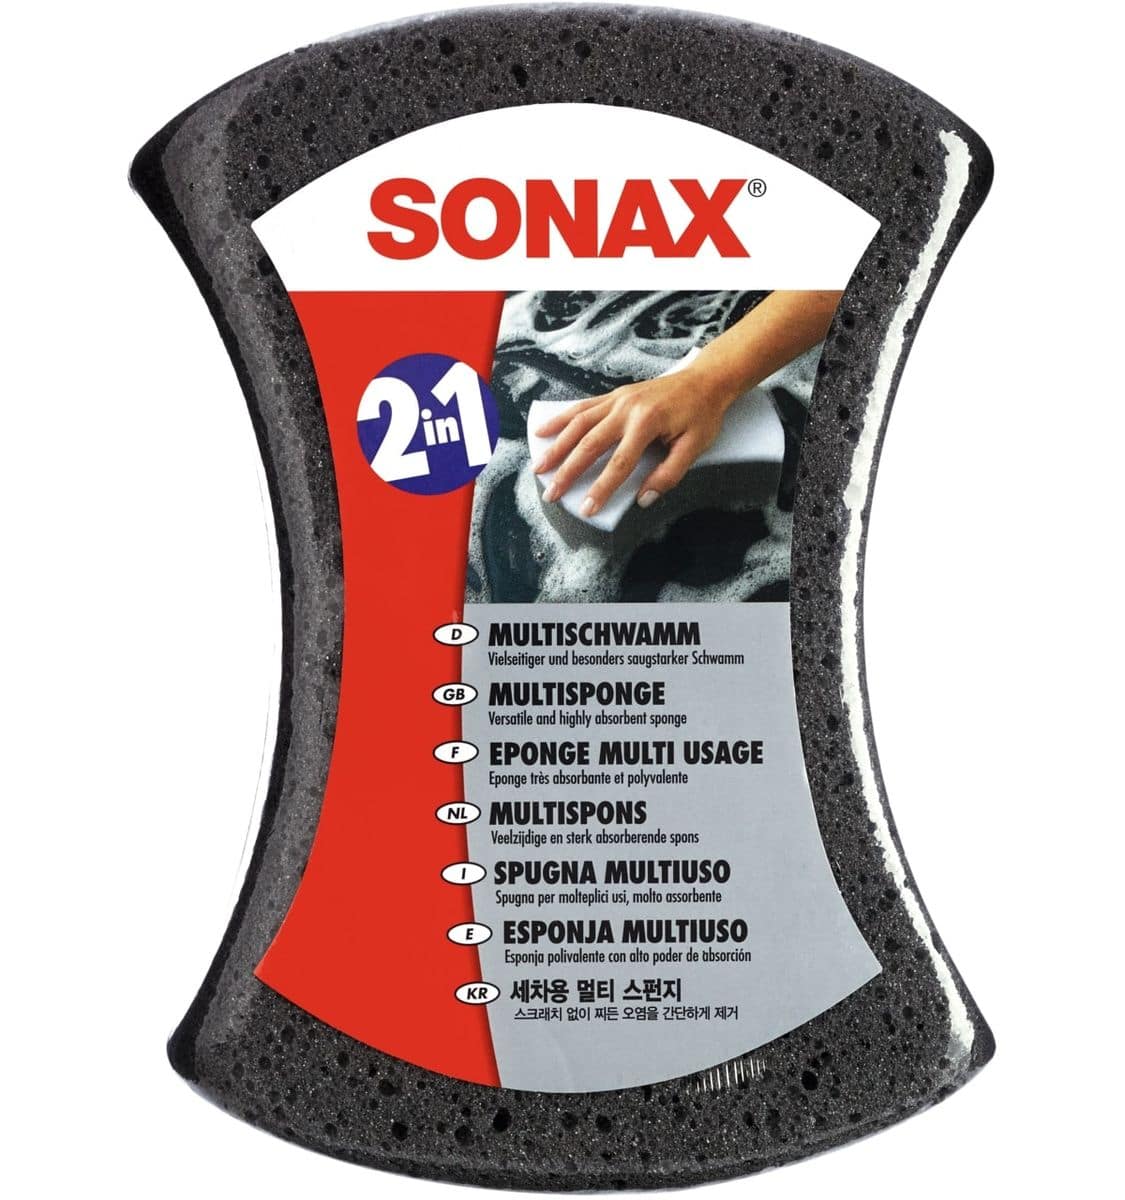 SONAX Multischwamm, 04280000 von Sonax